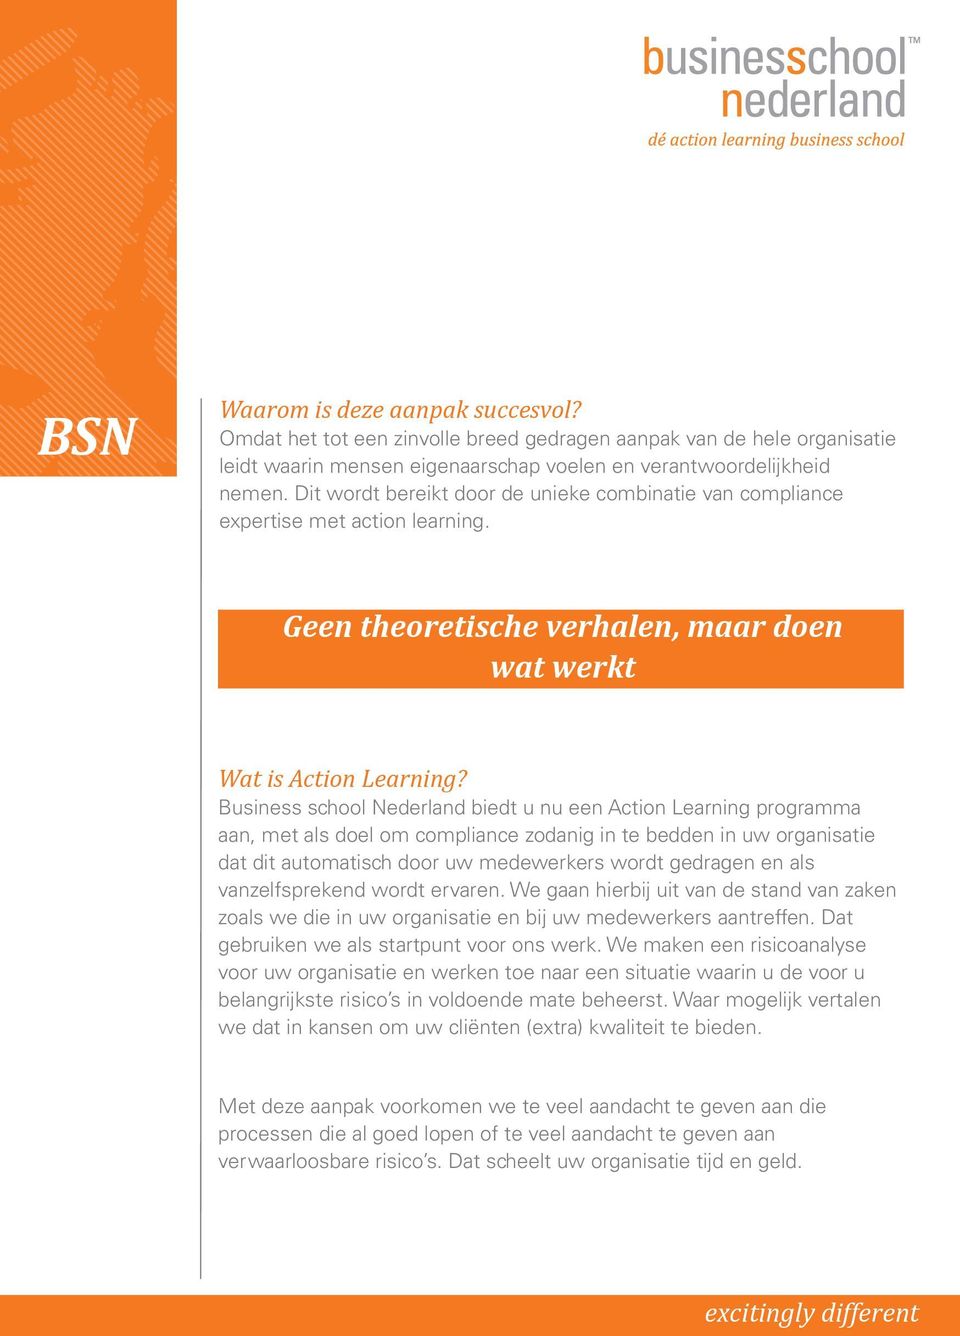 Business school Nederland biedt u nu een Action Learning programma aan, met als doel om compliance zodanig in te bedden in uw organisatie dat dit automatisch door uw medewerkers wordt gedragen en als